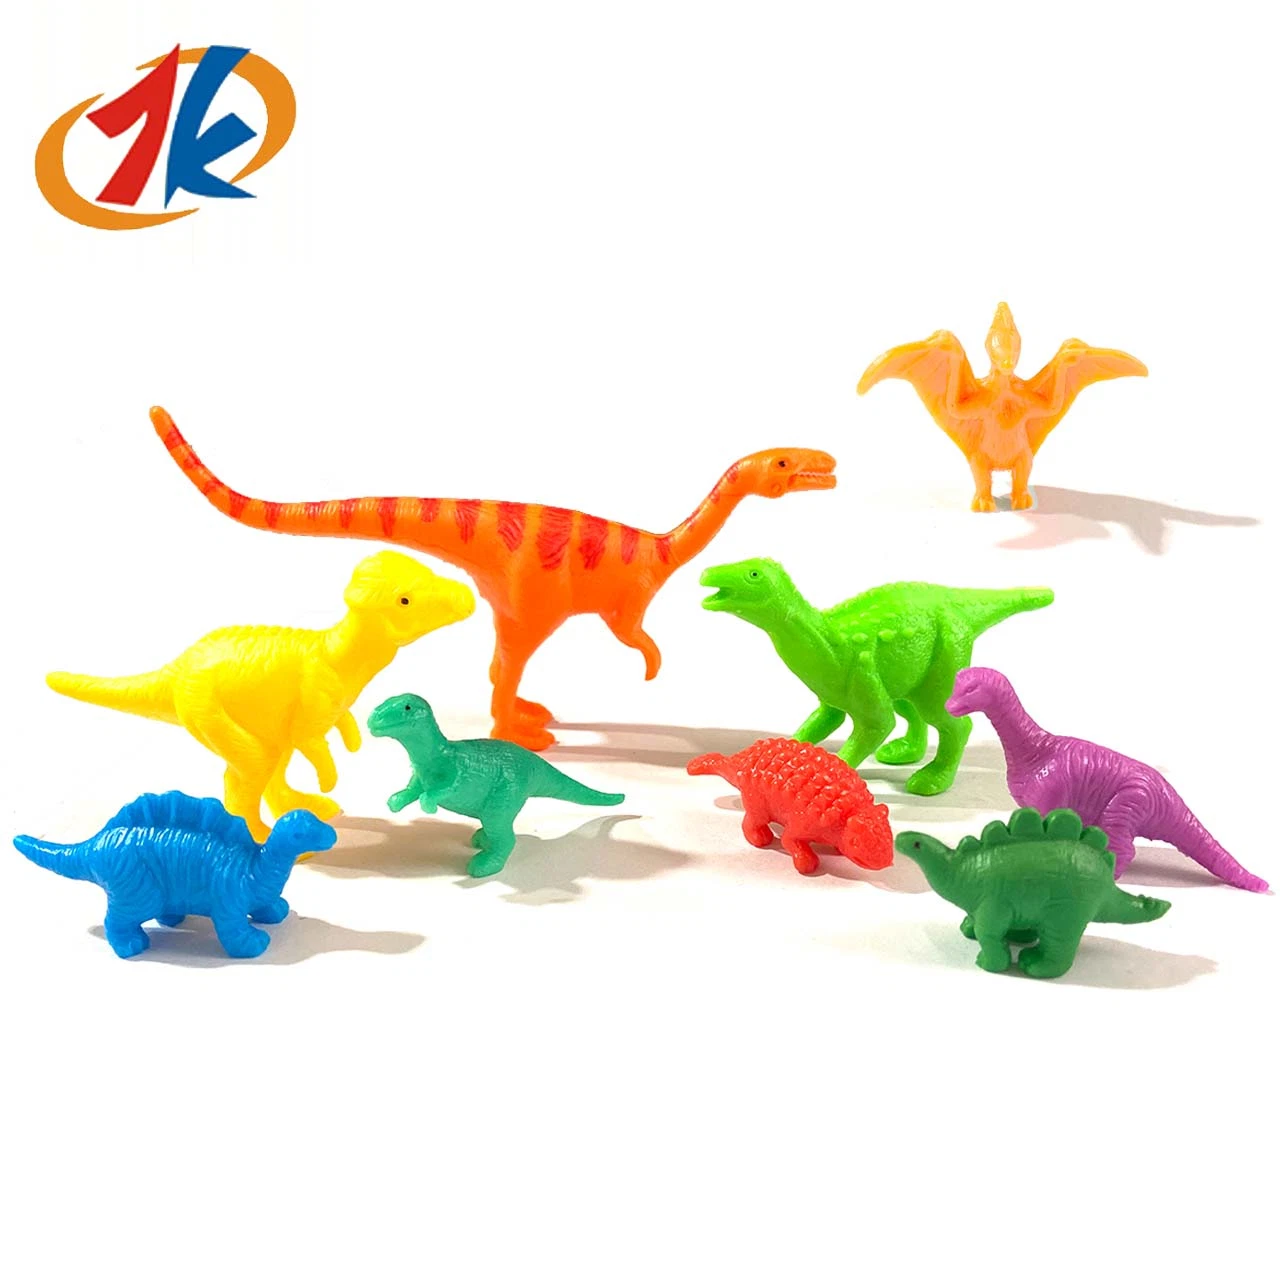 Juguetes nuevos Hobbies plástico niños juguete pequeño animal PVC Dinosaurio Juguetes